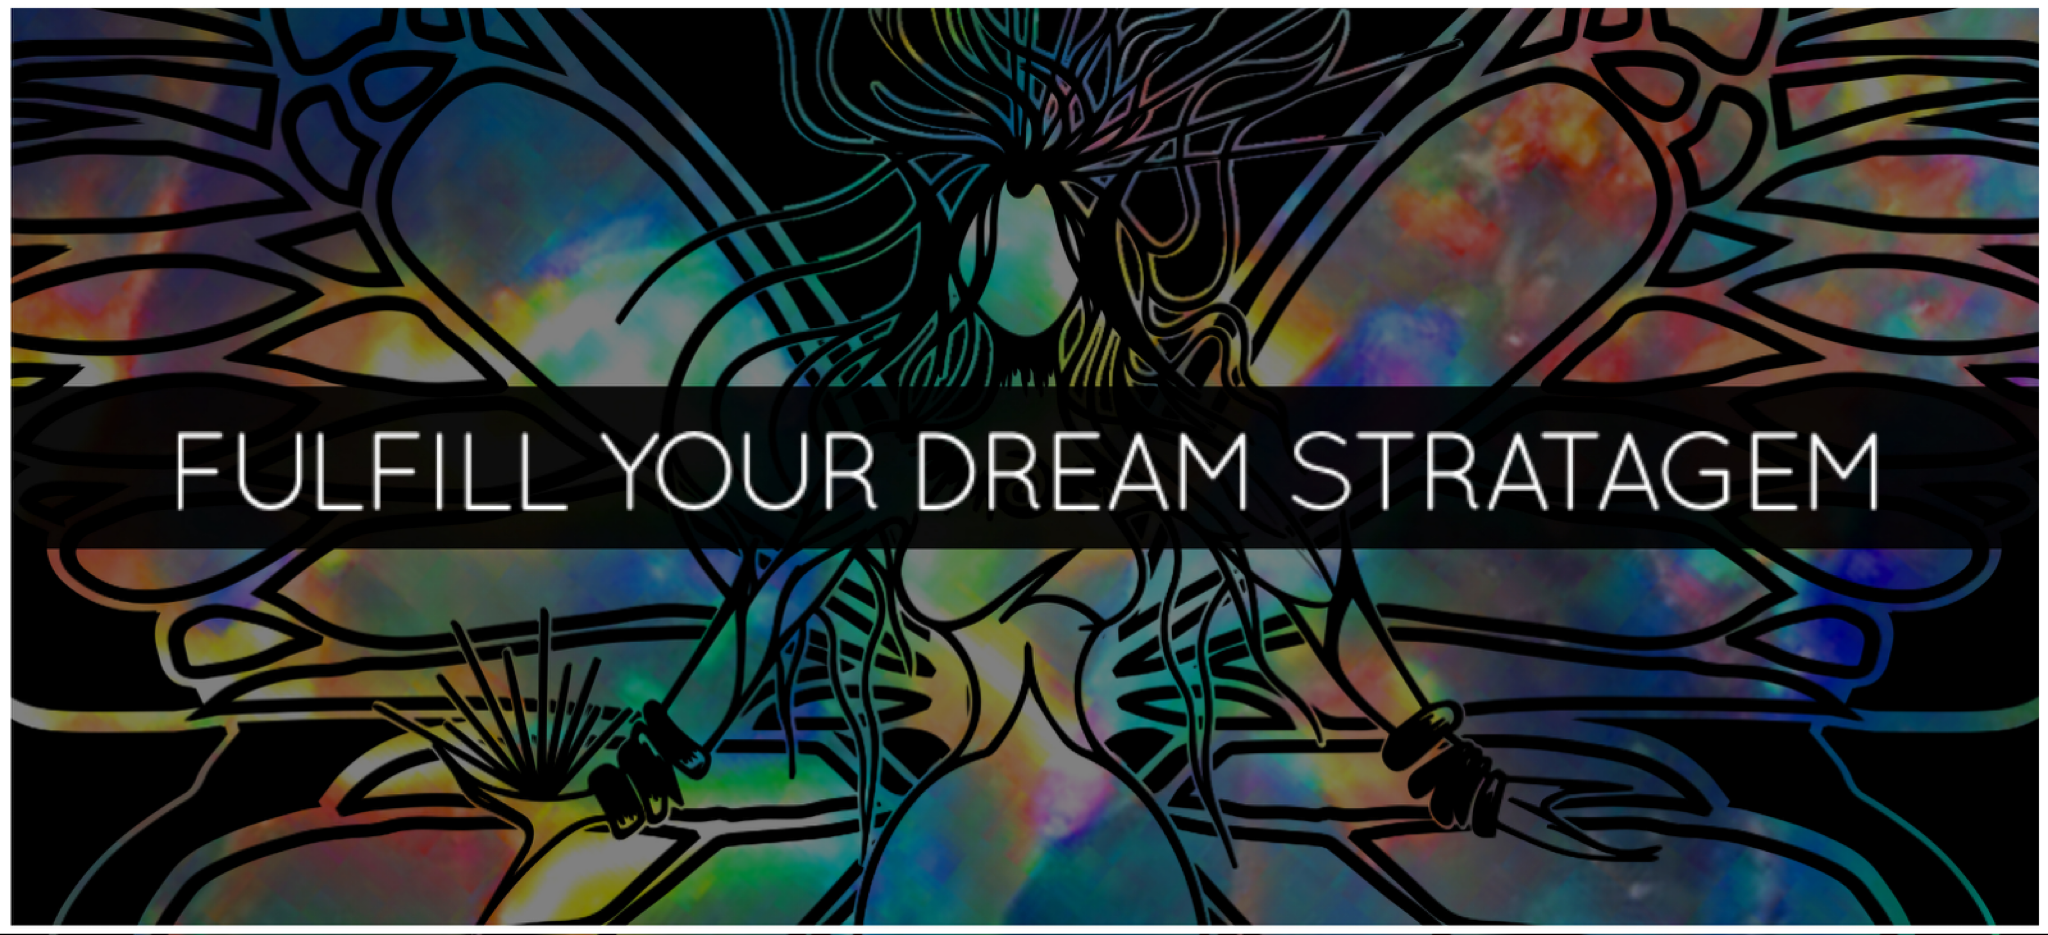 FULFILL YOUR DREAM STRATAGEM